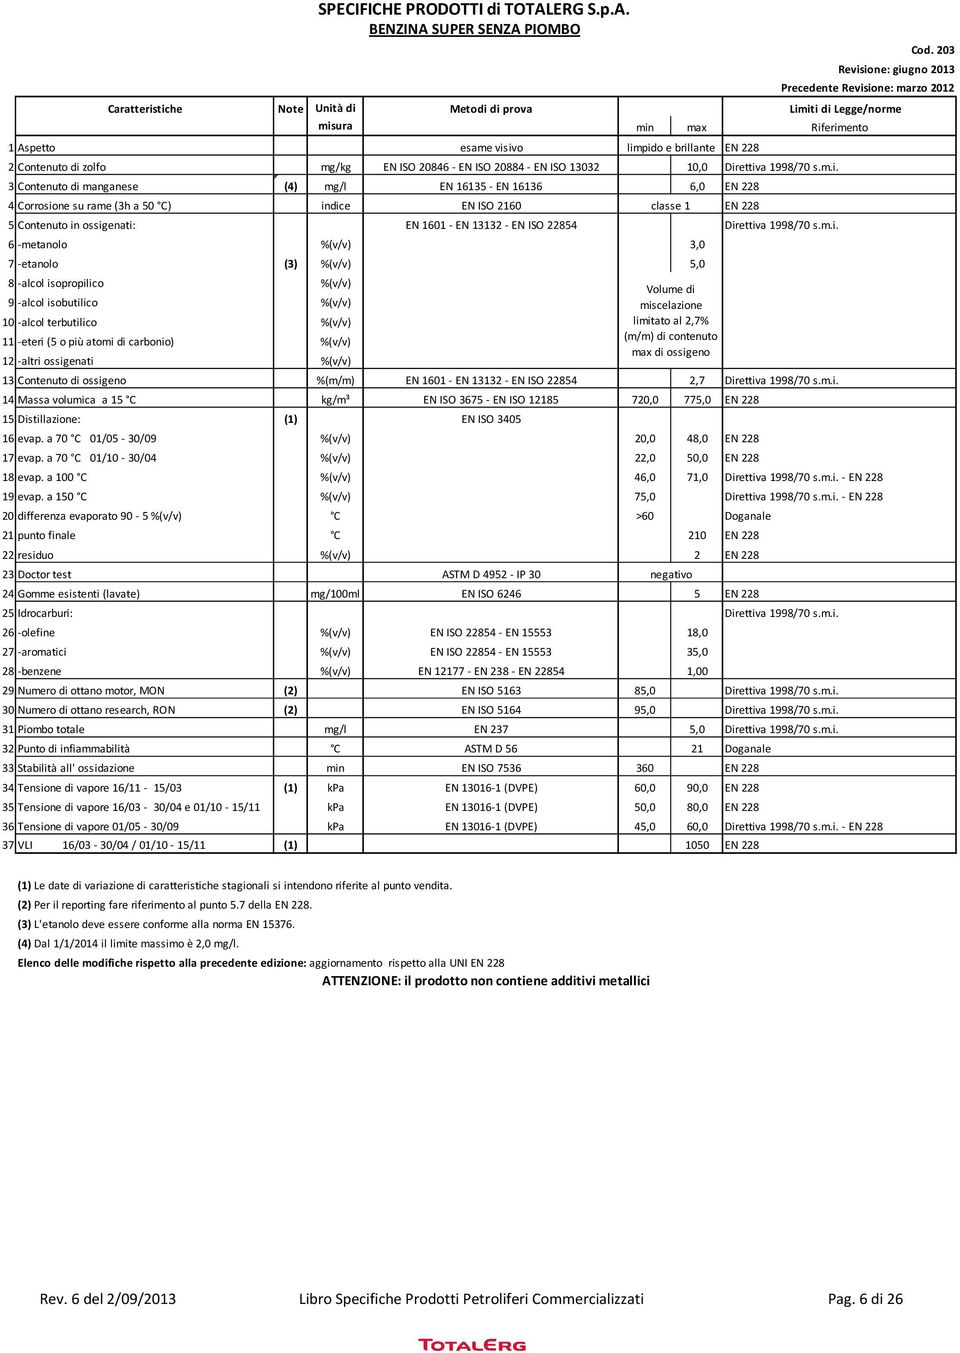 3 Contenuto di manganese (4) mg/l EN 16135 - EN 16136 6,0 EN 228 4 Corrosione su rame (3h a 50 C) indice EN ISO 2160 classe 1 EN 228 5 Contenuto in ossigenati: EN 1601 - EN 13132 - EN ISO 22854